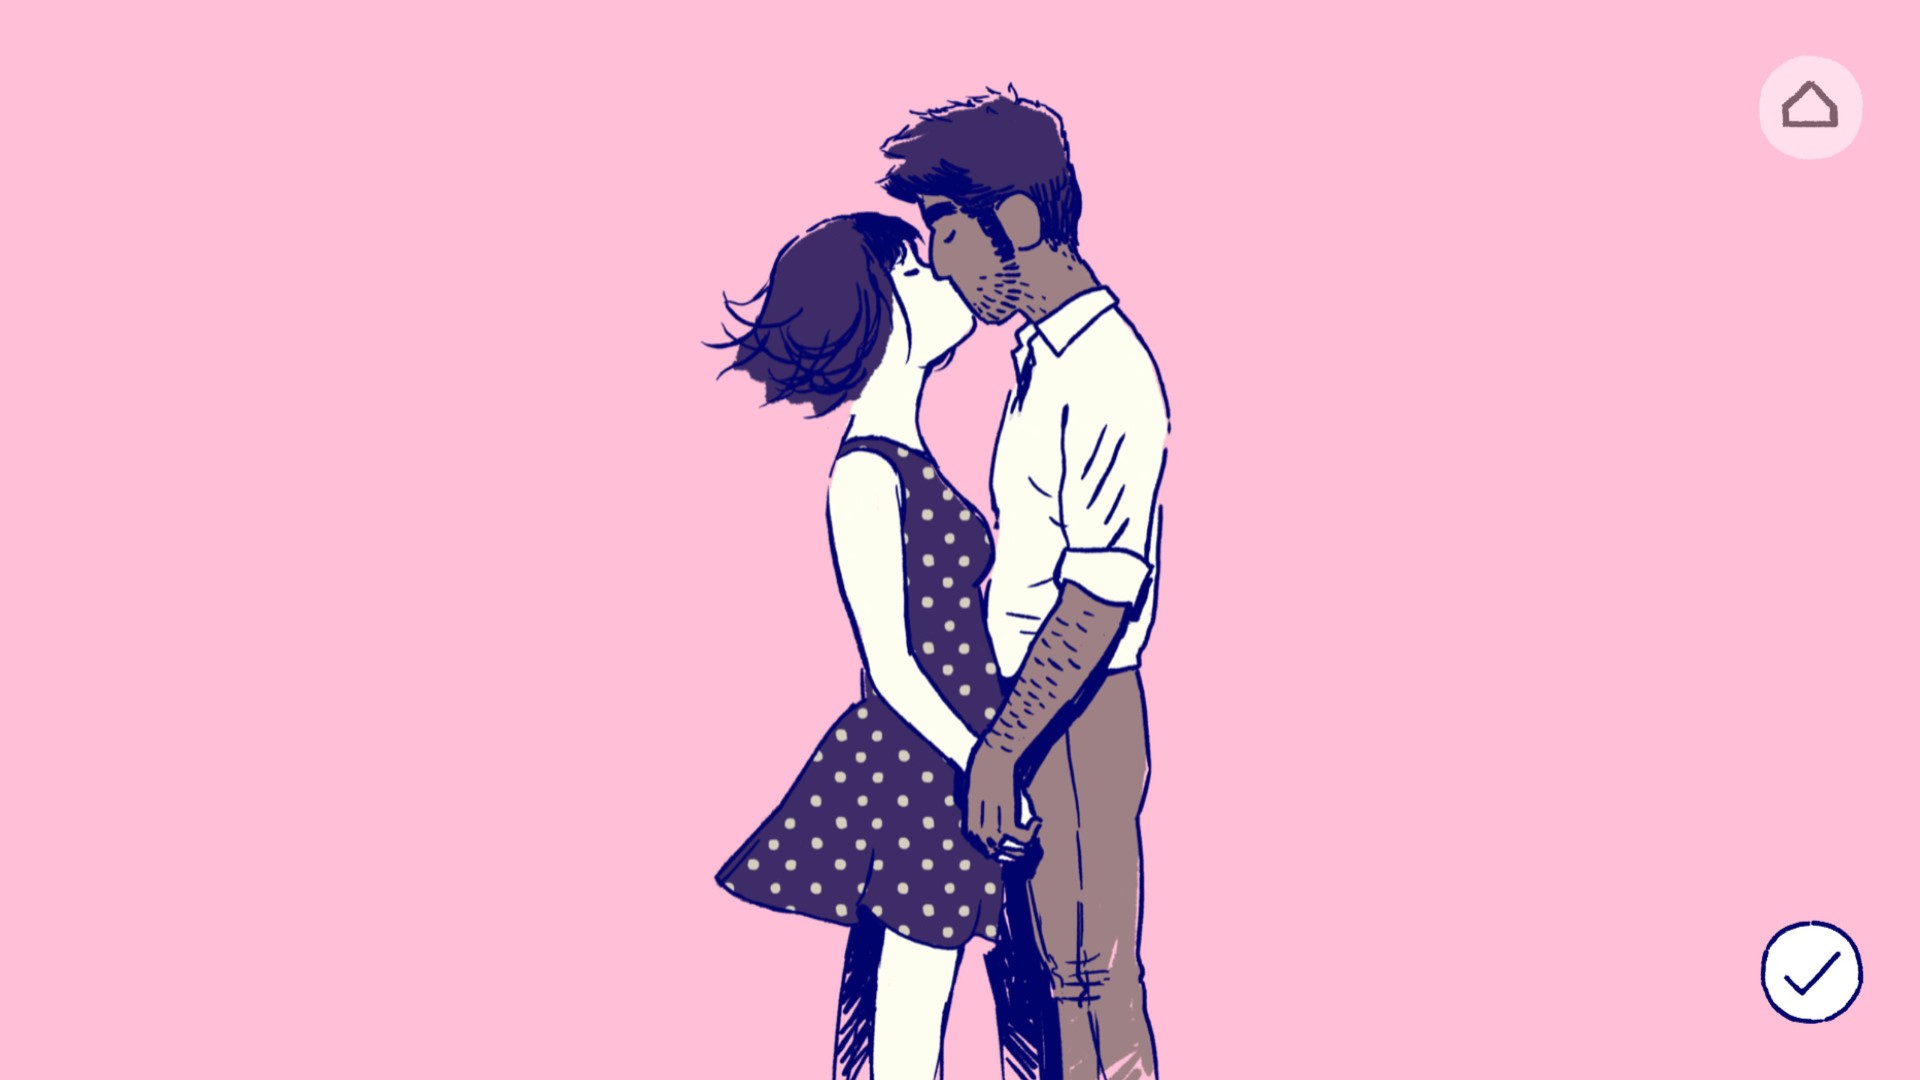 بہترین موبائل پہیلی کھیل: فلورنس۔ امیج میں دو افراد کو رومانٹک طور پر چومنے والا دکھایا گیا ہے۔